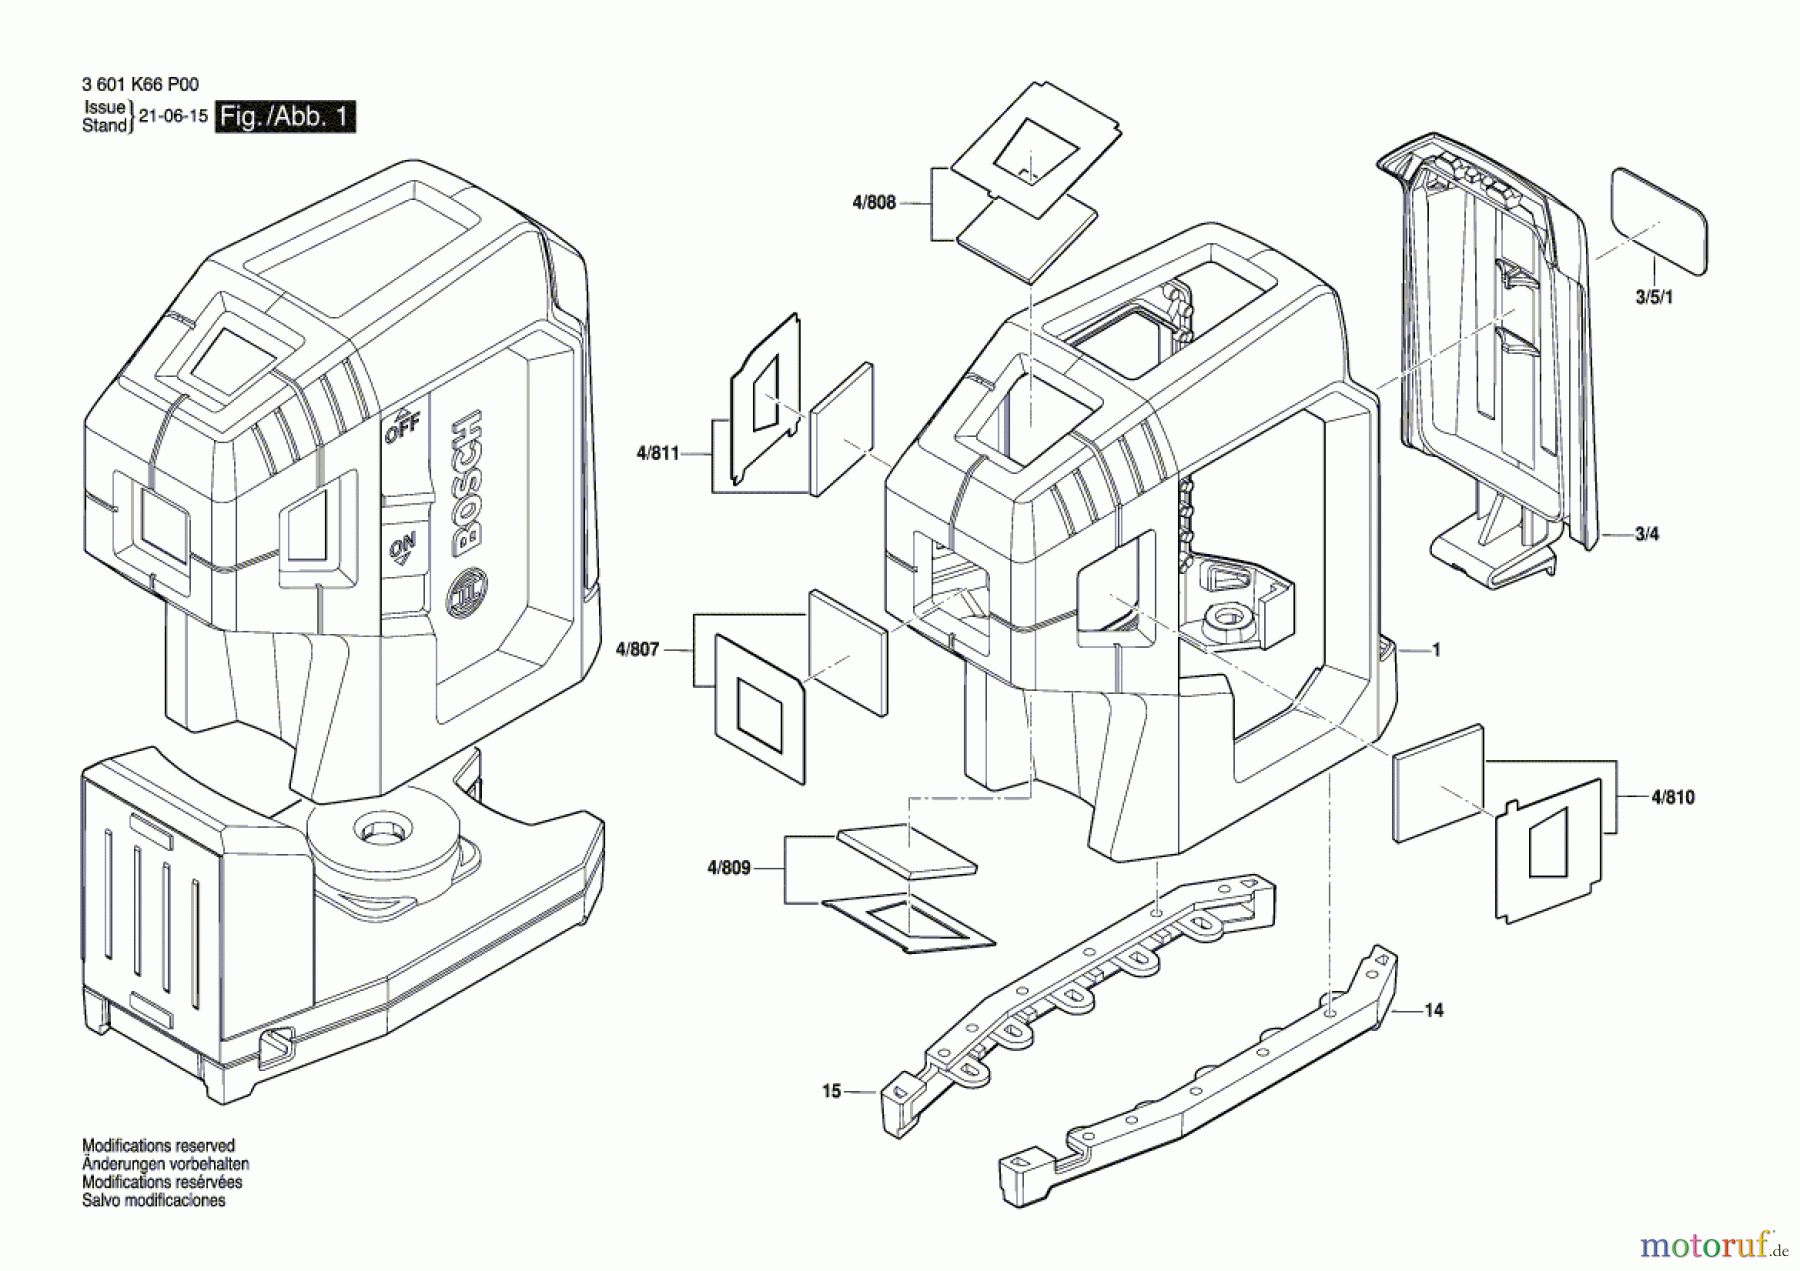  Bosch Werkzeug Baulaser GPL 5 G Seite 1